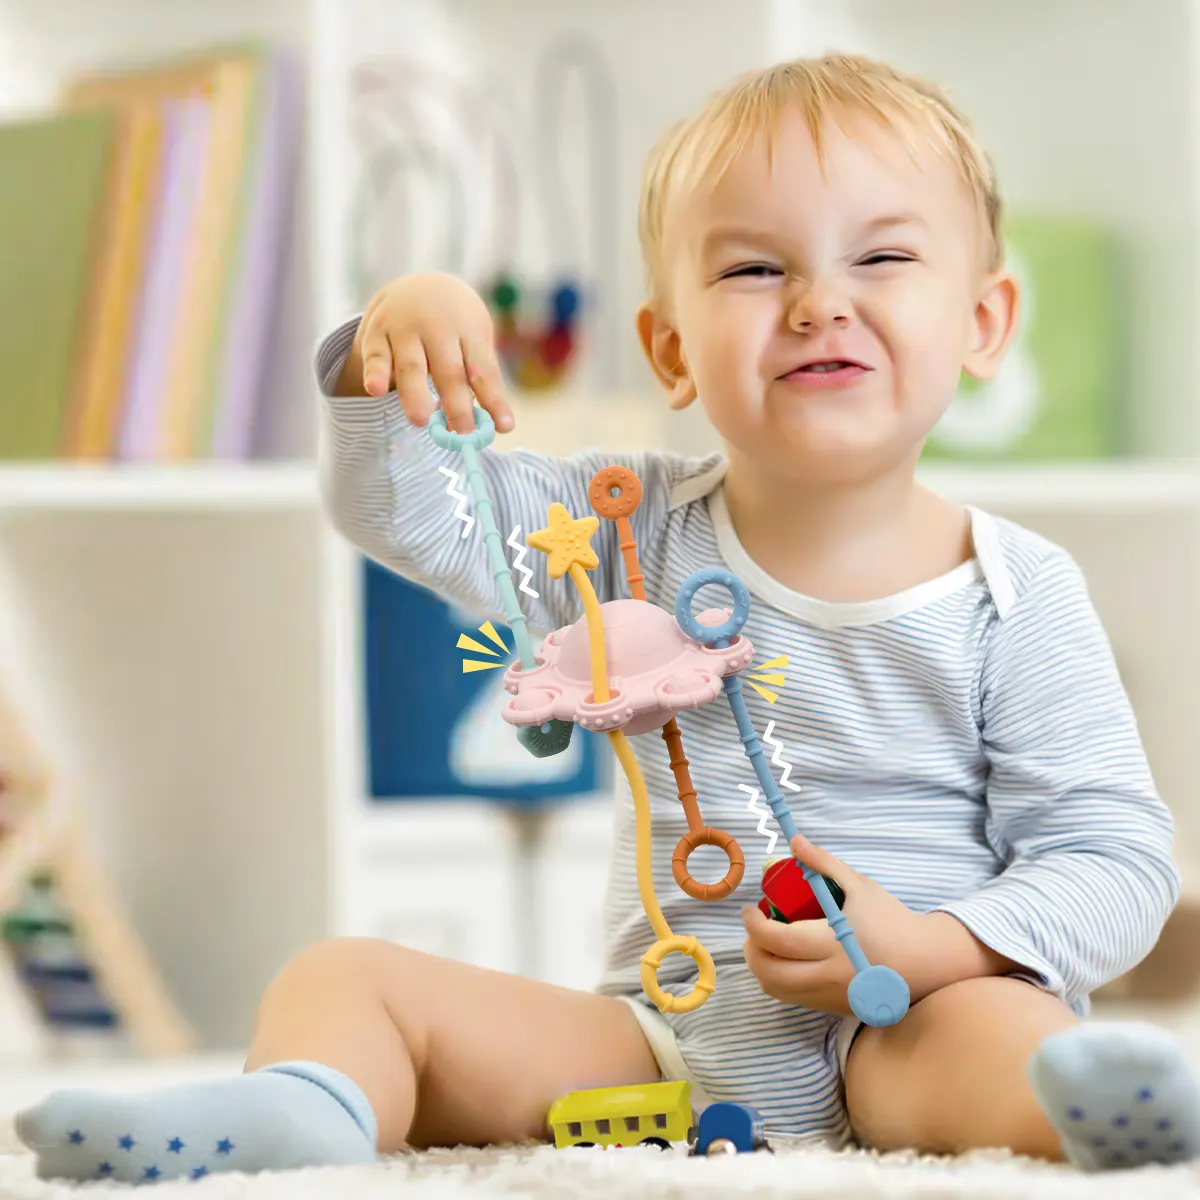 बच्चे के समन्वय क्षमता का व्यायाम करें सिलिकॉन टीथर फ्री बीपीएफ्री सिलिकॉन टीथर शुरुआती राहत शिशु खिलौने लड़कों के शिशु सामान